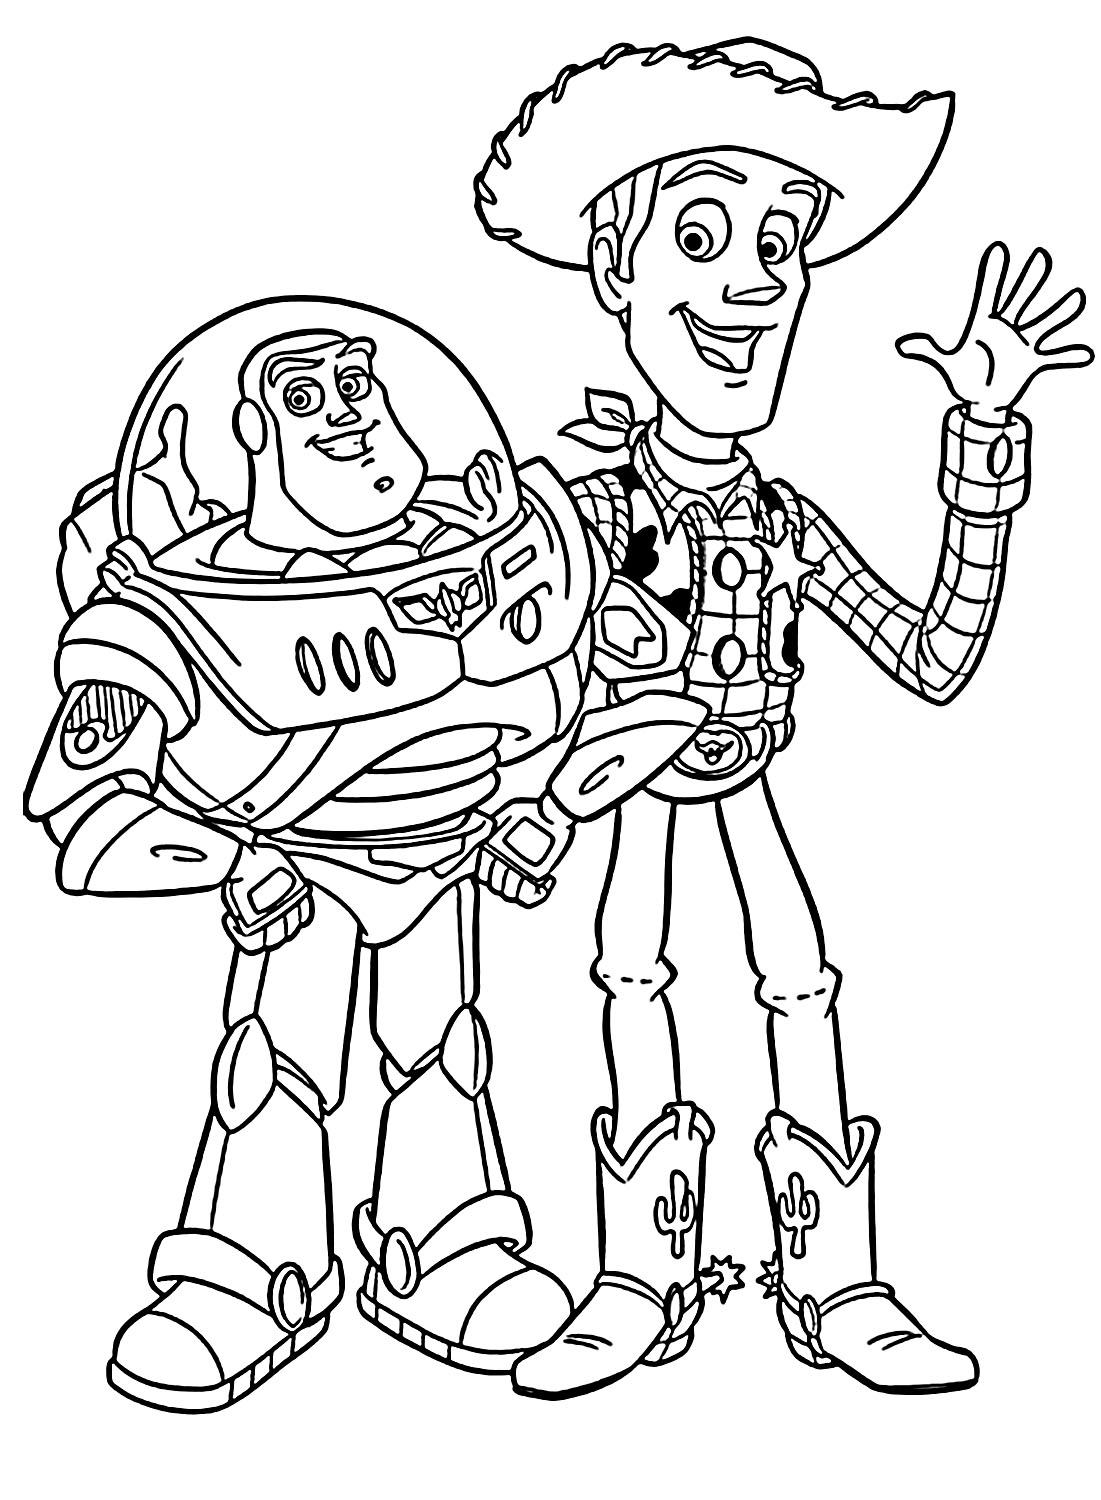 Woody en Buzz van Buzz Lightyear